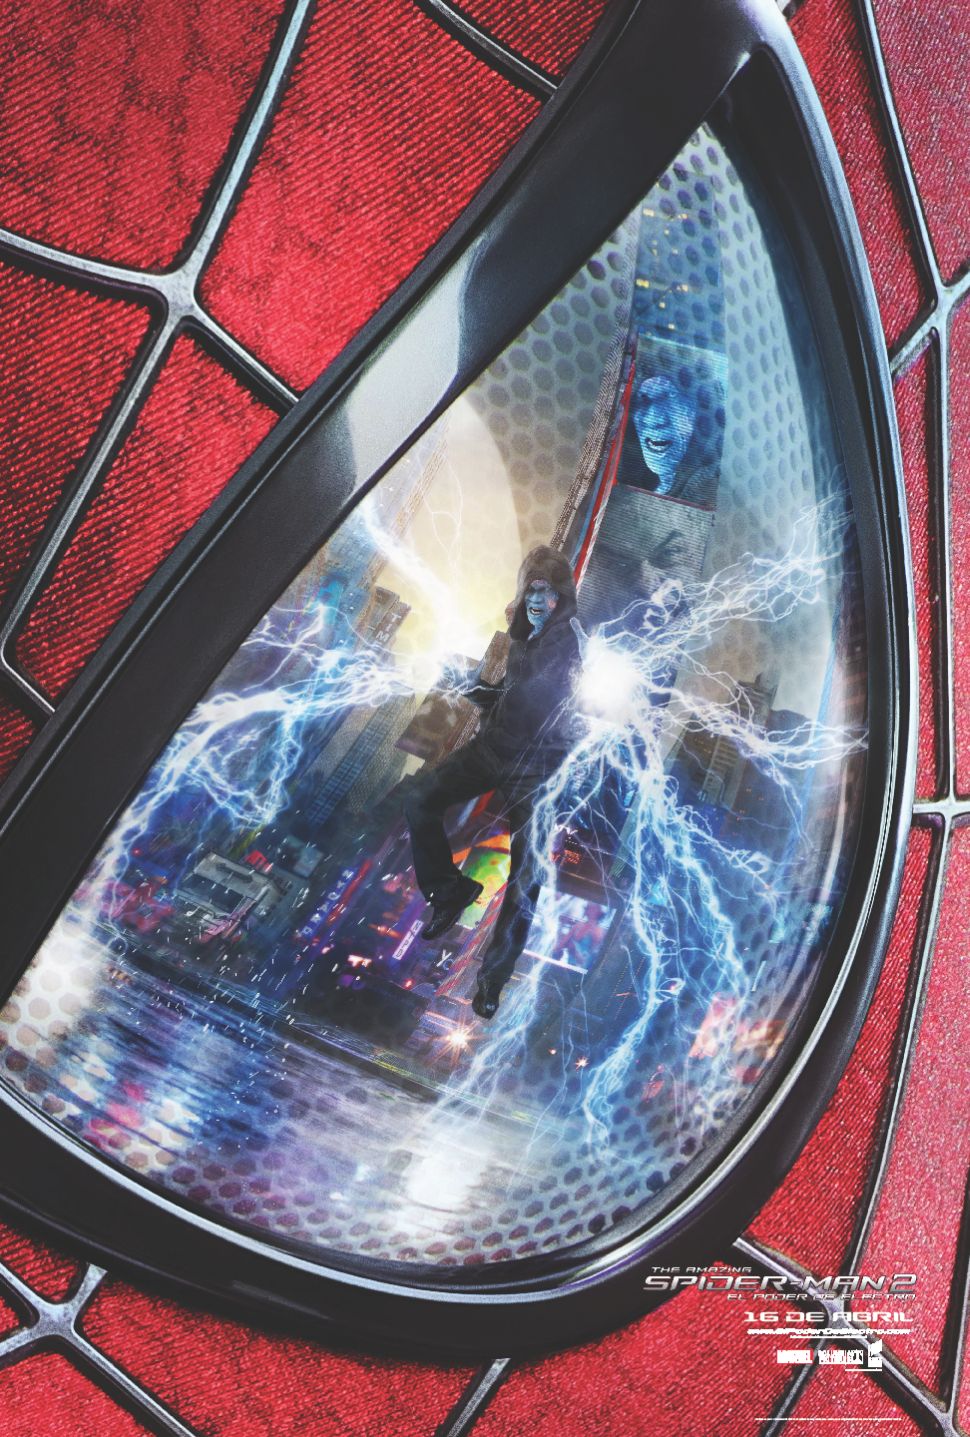 Foto de The Amazing Spider-Man 2: El Poder de Electro